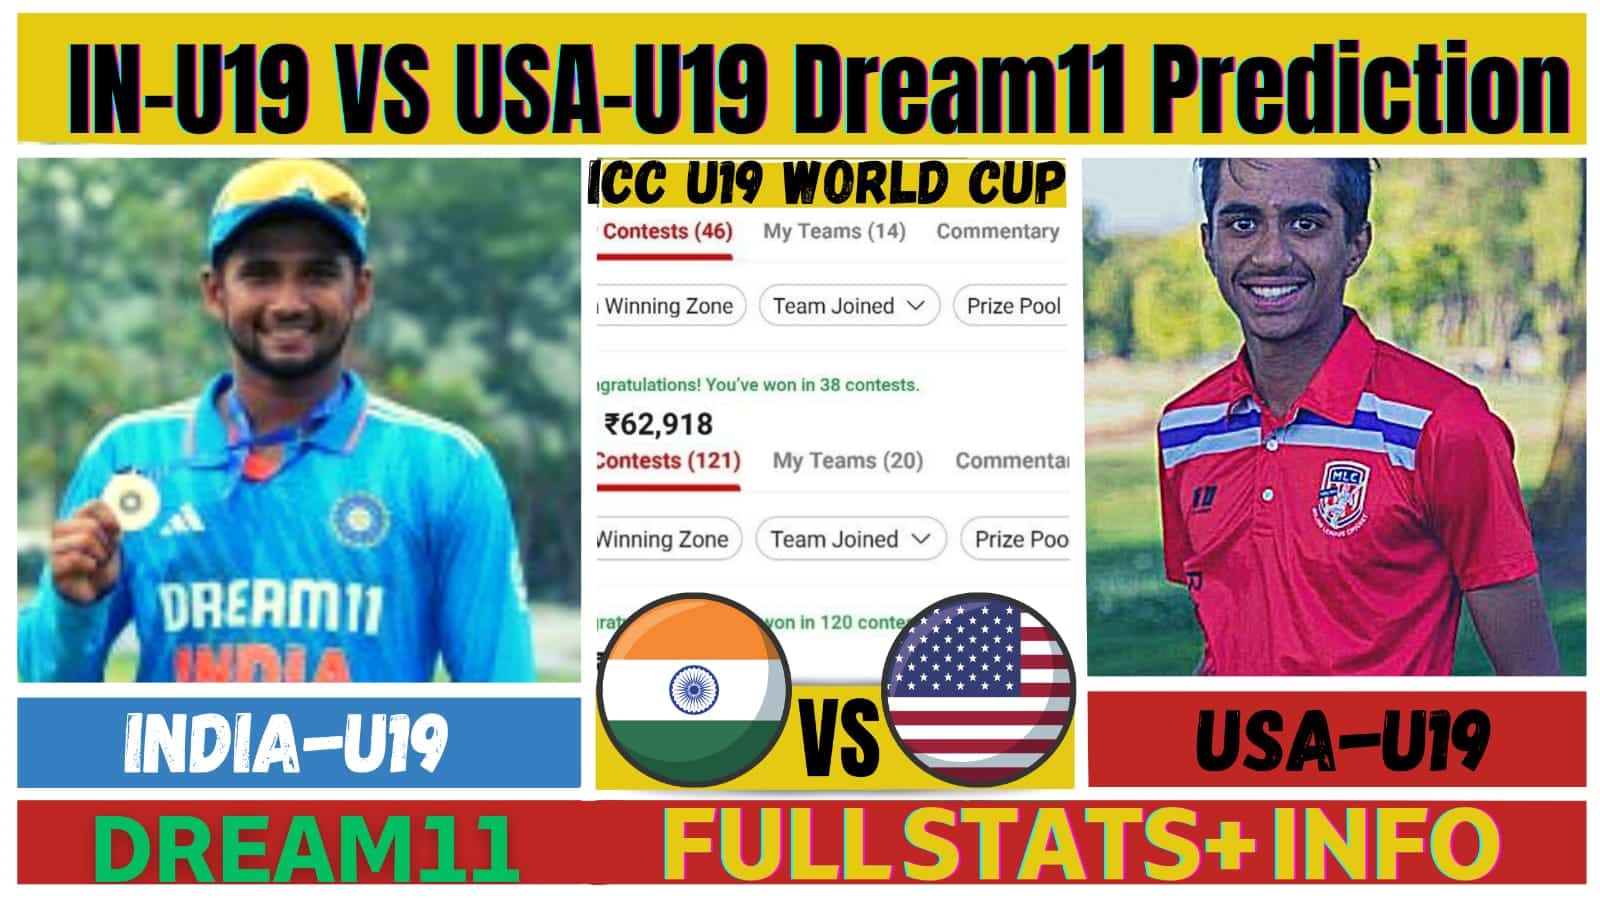 IN-U19 VS USA-U19 Dream11 Team Prediction Today